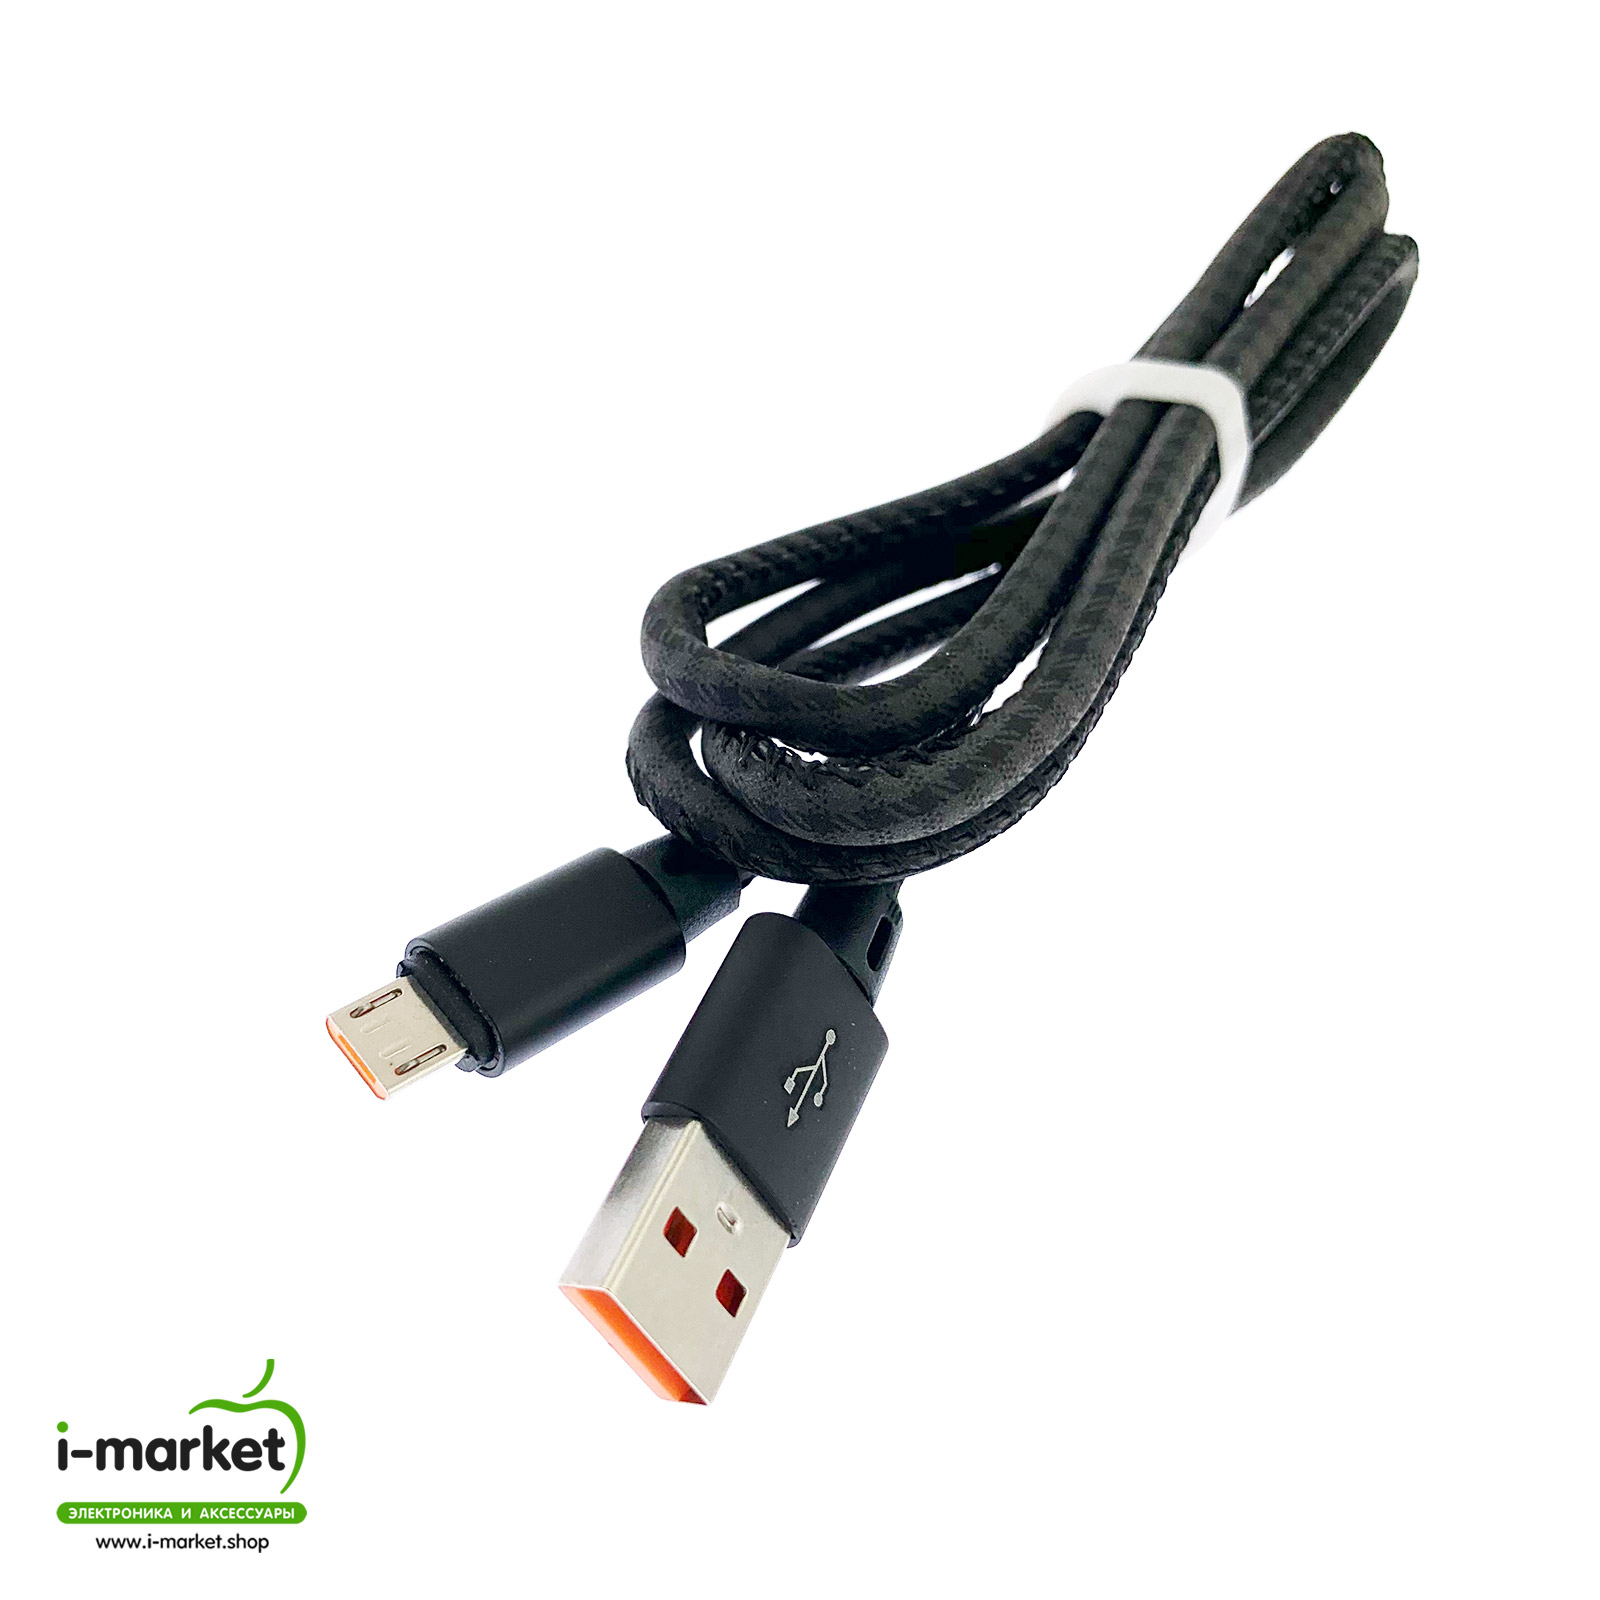 USB Дата кабель A88 для заряда и синхронизации, тип Micro-USB, в армированной под кожу оболочке, длина 1 метр, цвет черный.